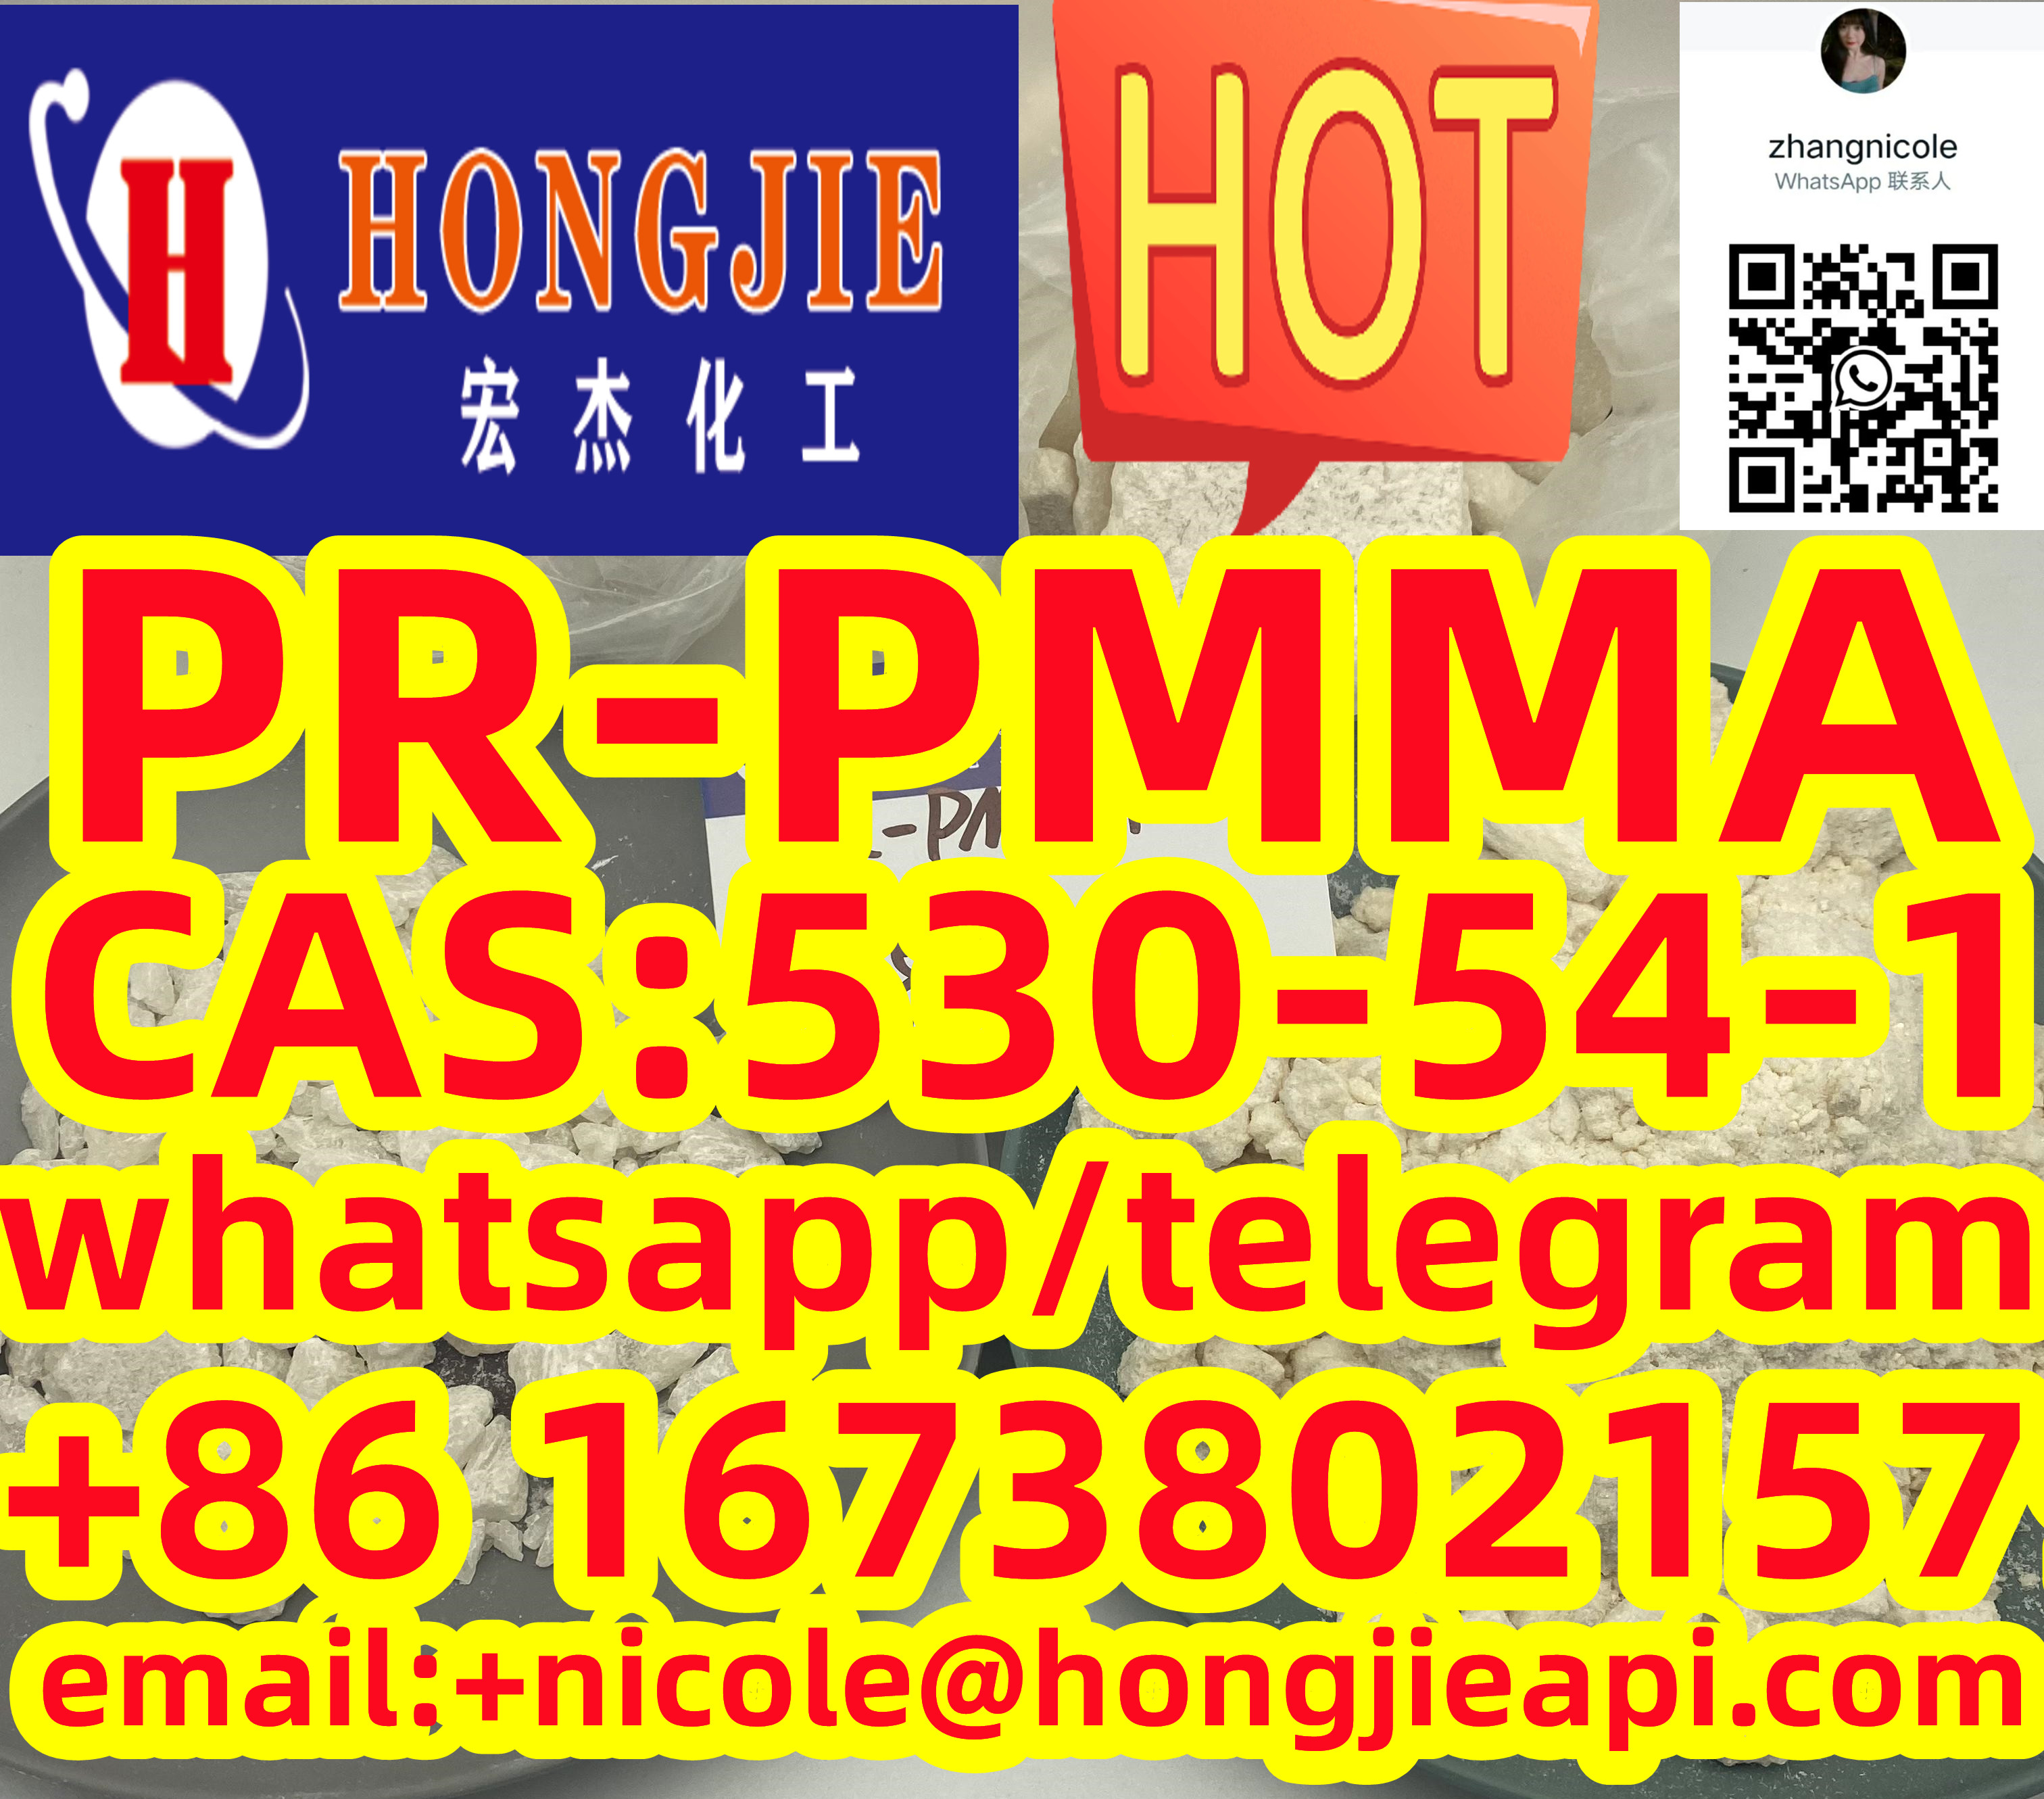 High quality 2-PR-PMMA CAS:530-54-1